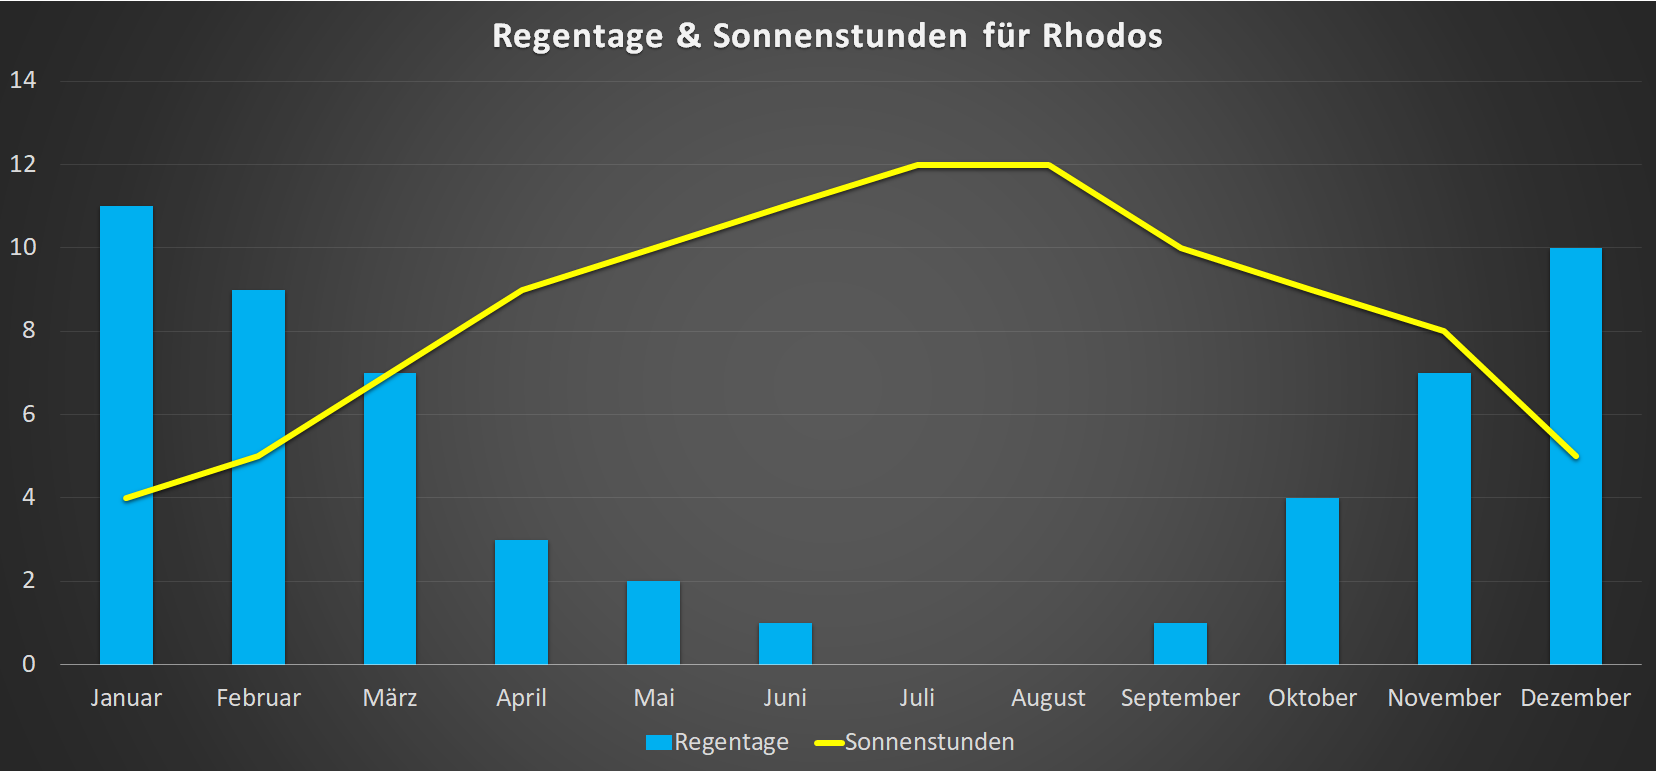 Regentage & Sonnenstunden für Rhodos im Jahresverlauf